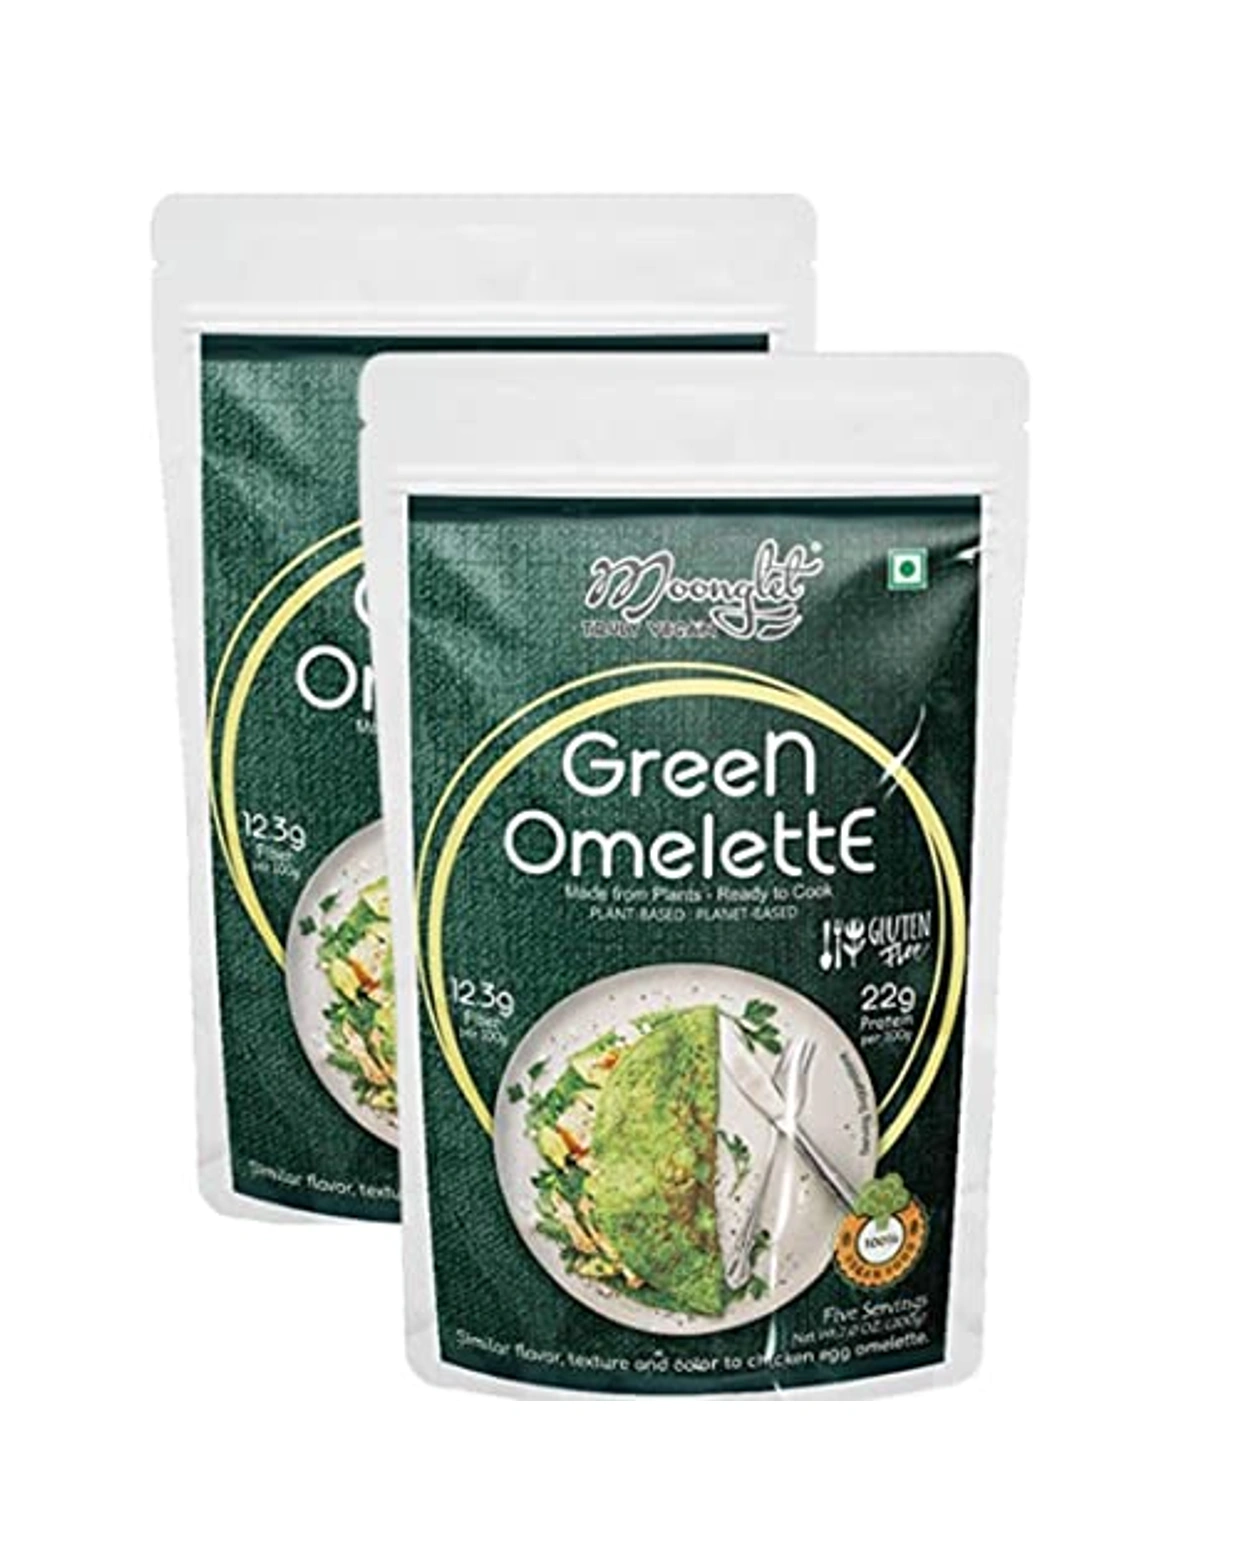 Green Omelette (Zero Egg Green Omelette) - Pancake Alternative - 400g: Pack  of 2, 200g Each, Nutritious and Plant-Based Breakfast